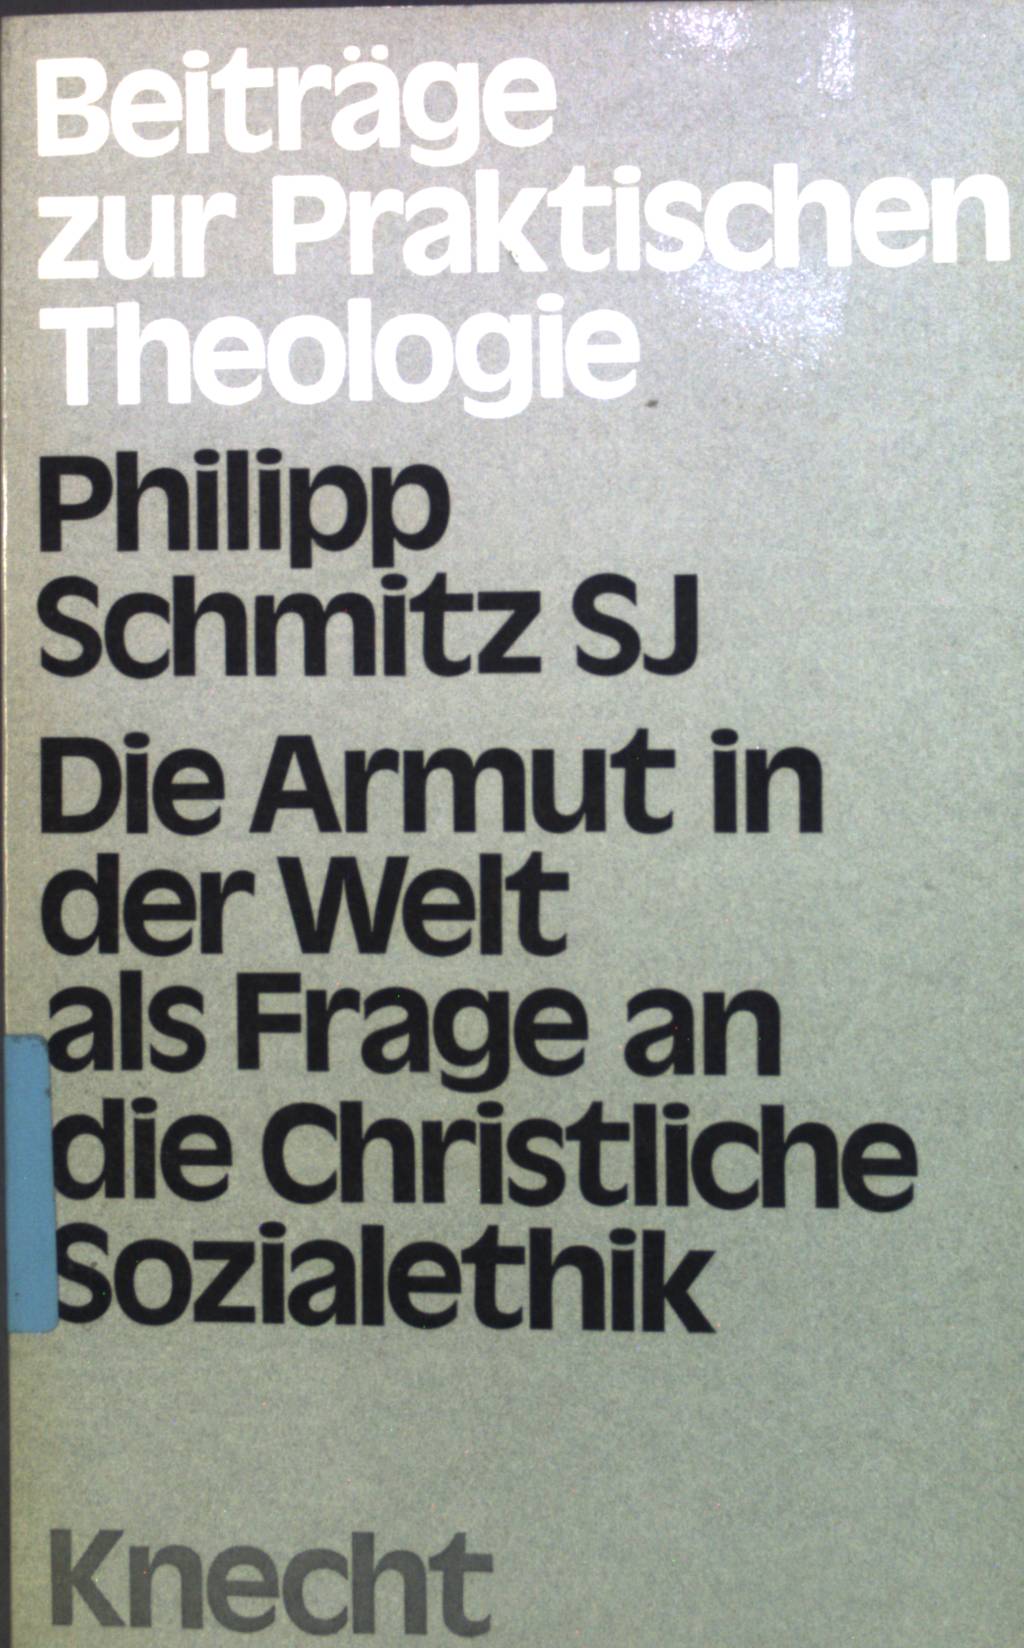 Die Armut in der Welt als Frage an die christliche Sozialethik.  1. Aufl. - Schmitz, Philipp